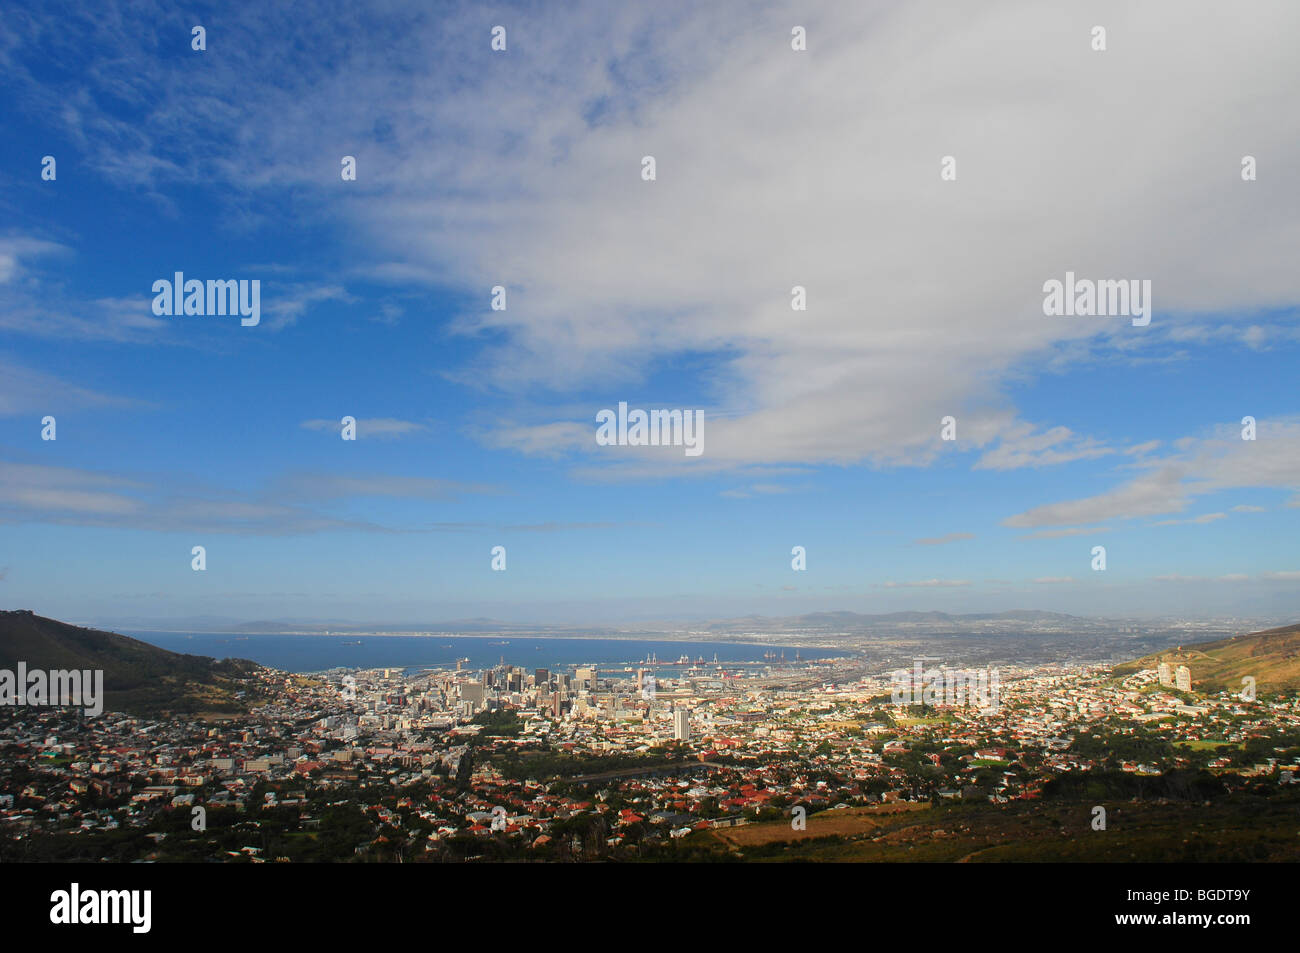 Une photographie du paysage de la ville du Cap, Afrique du Sud Banque D'Images